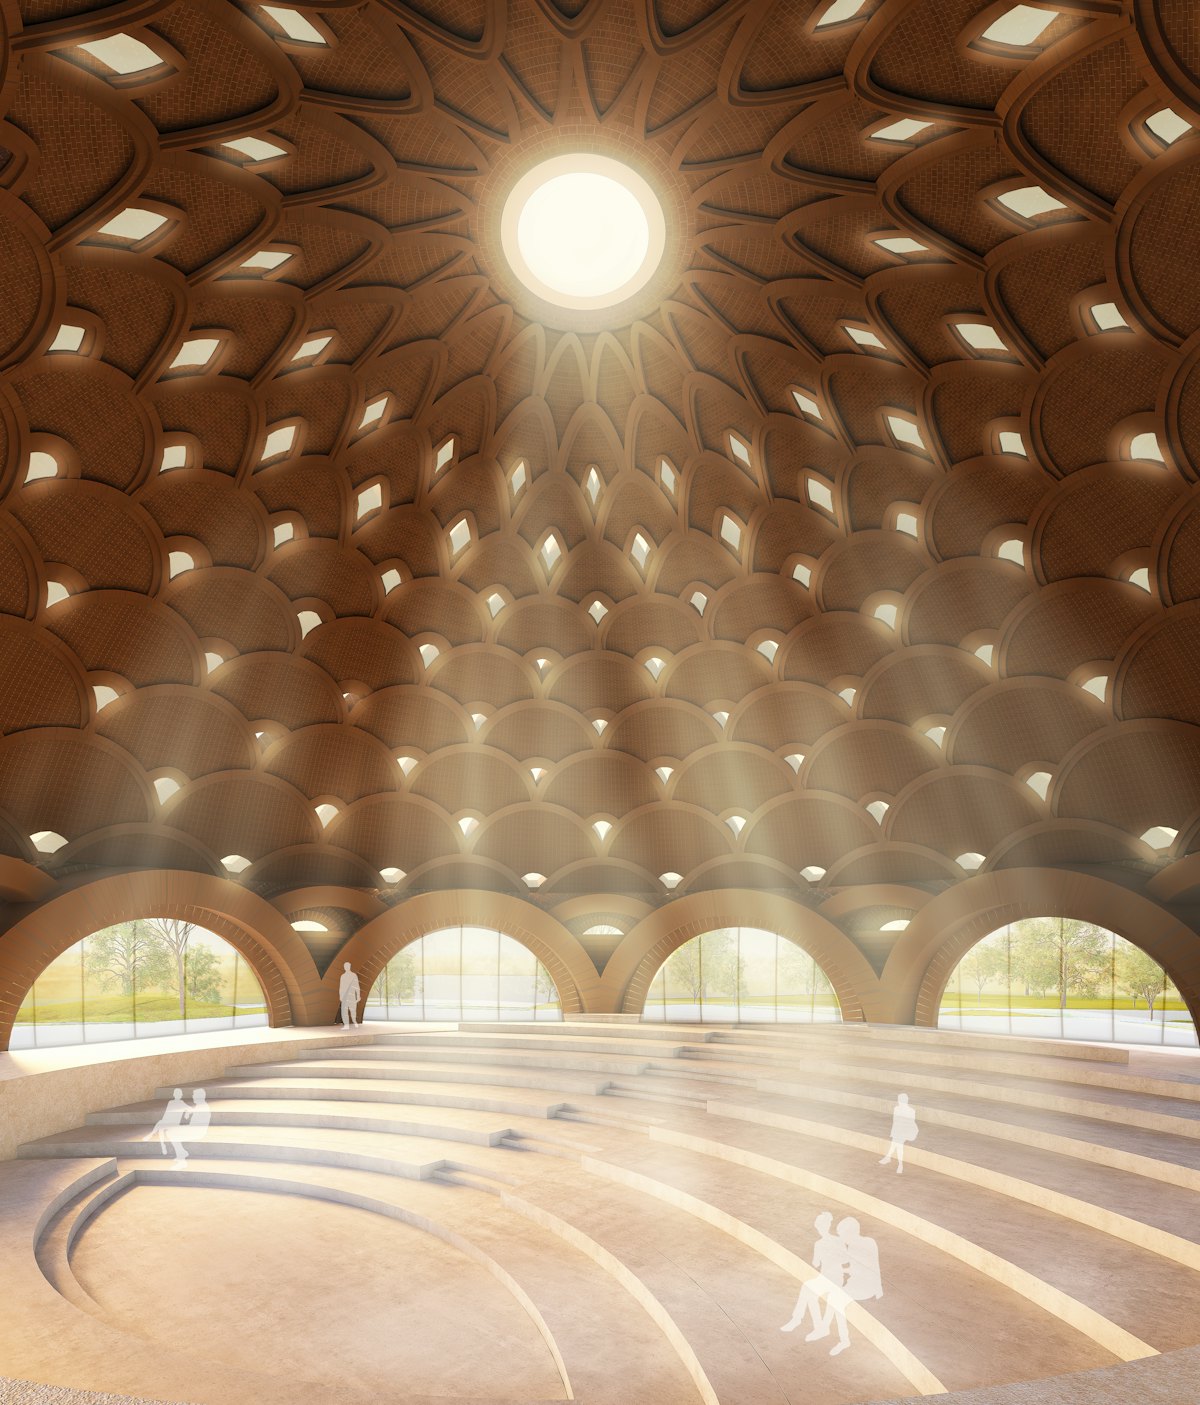 Diseño de la cúpula de la Casa de Adoración de Bihar Sharif (India).